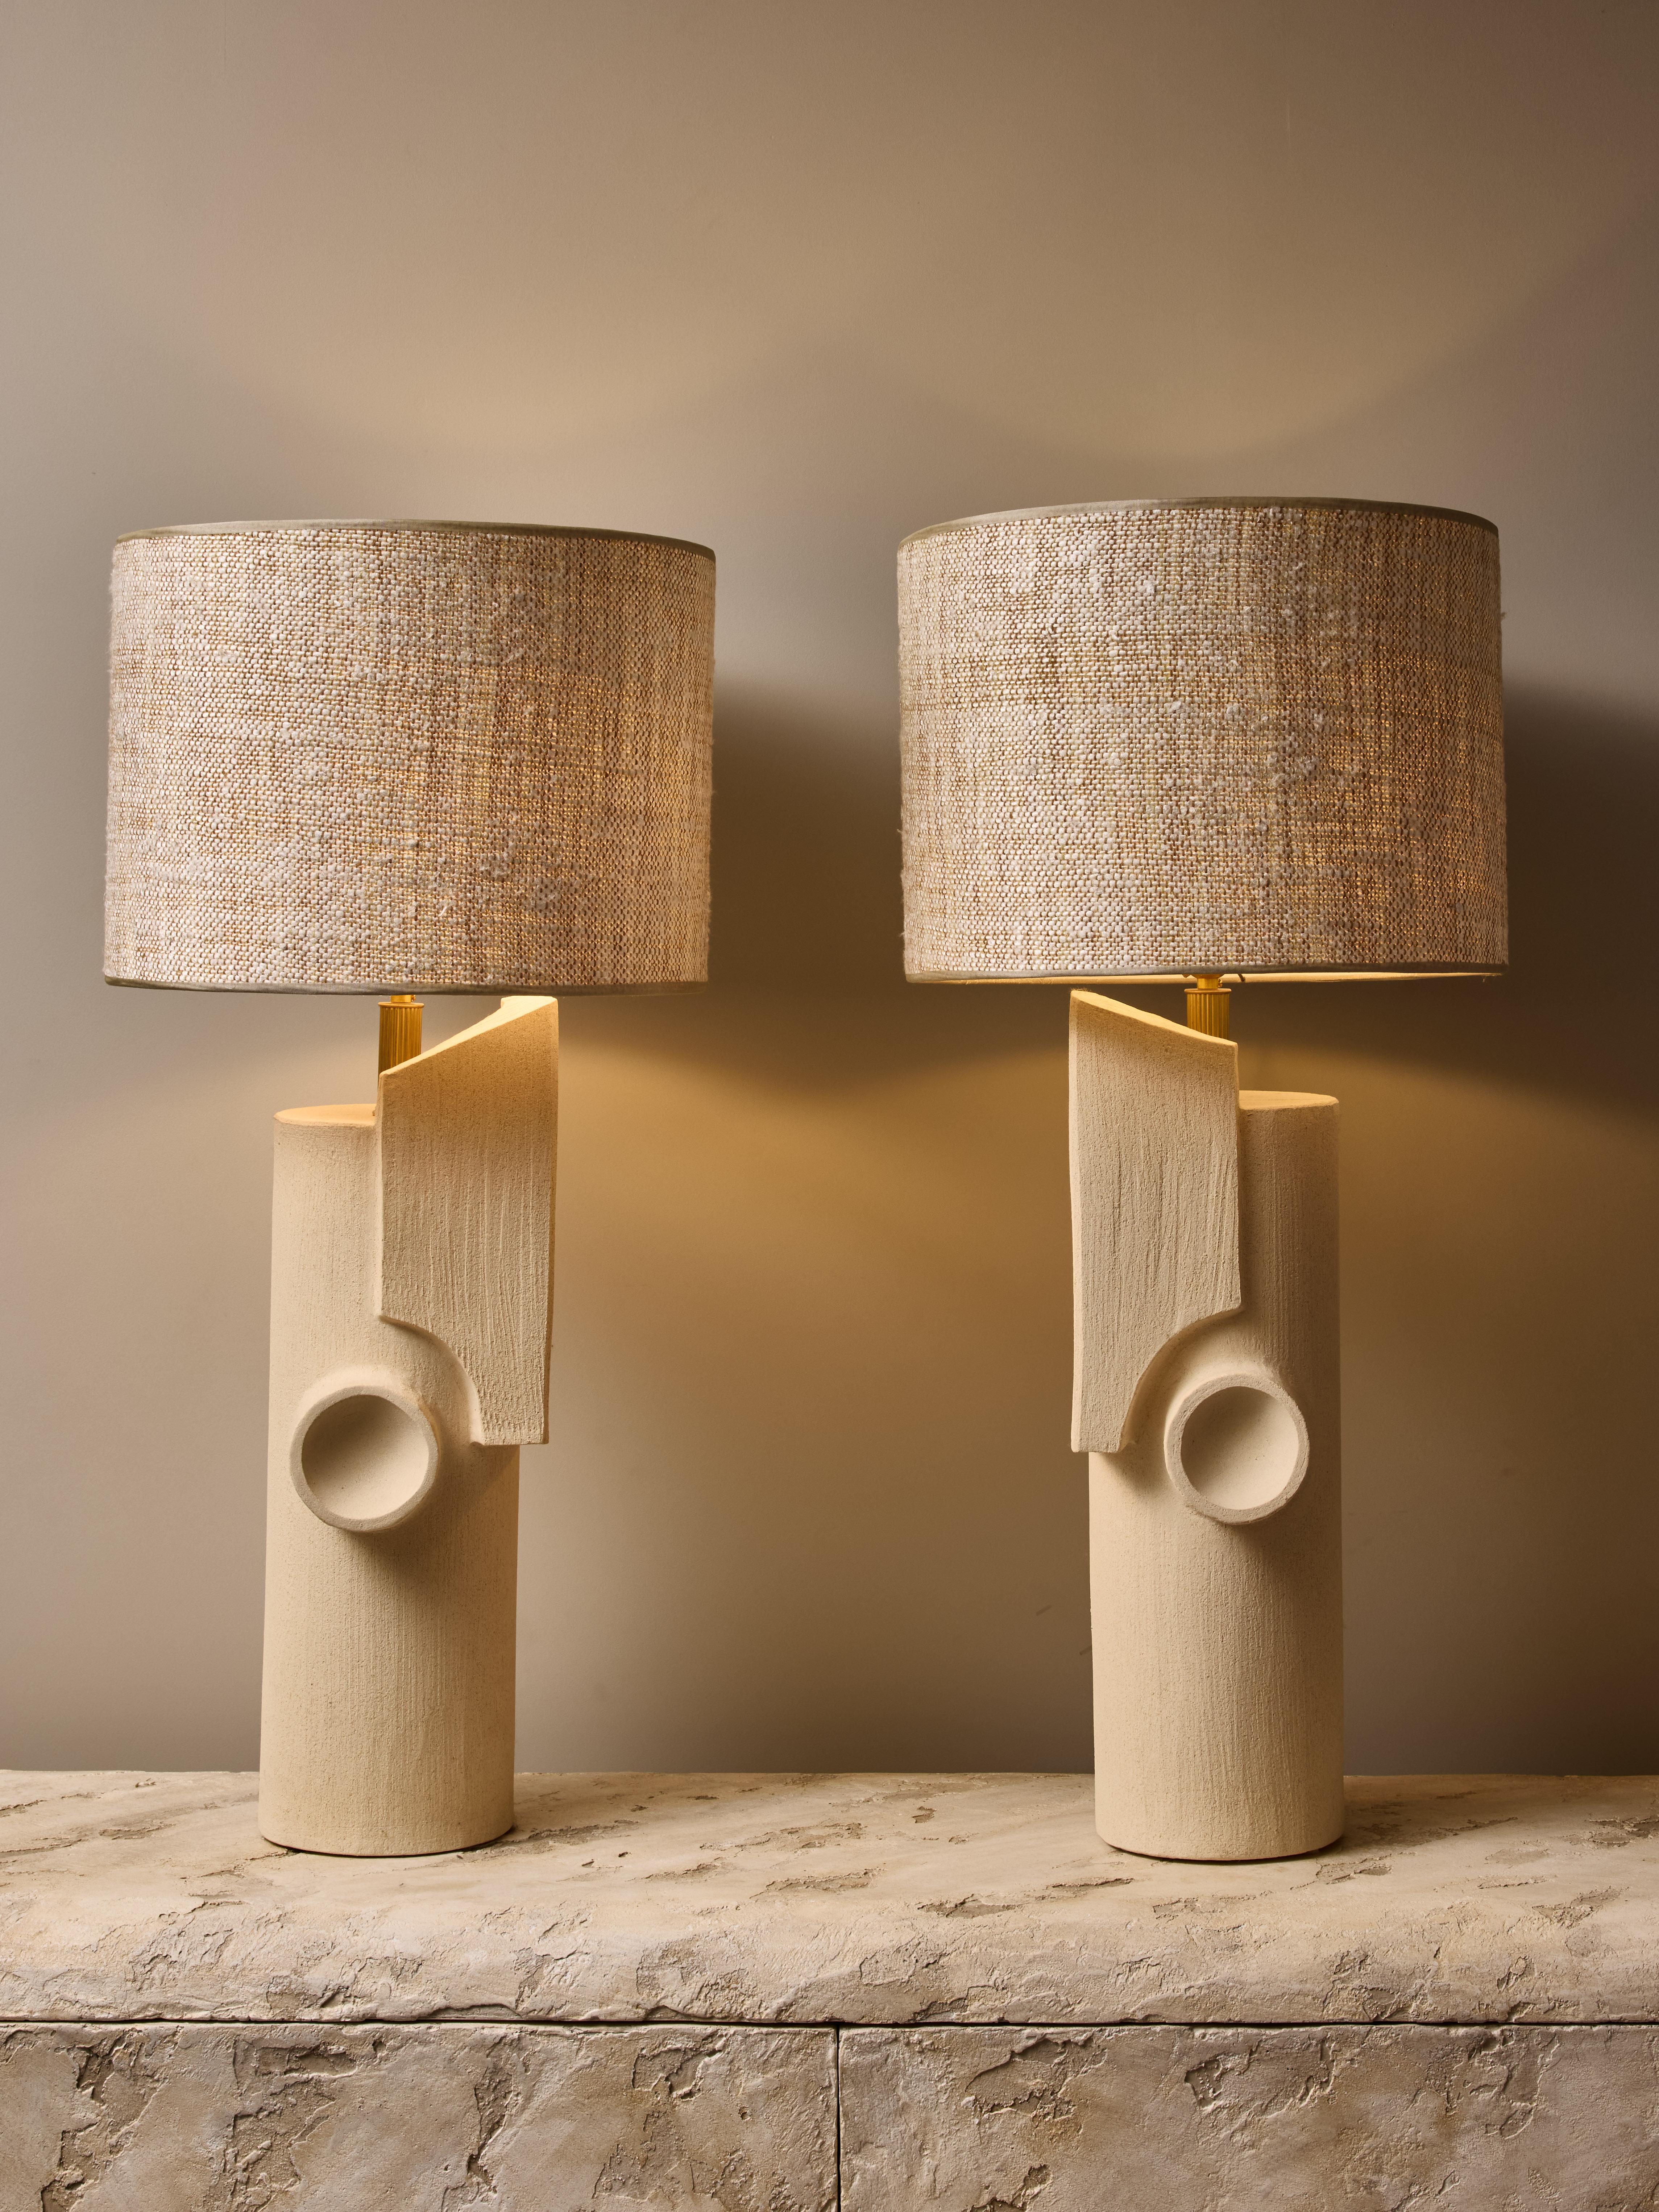 Paire de lampes de table en céramique de la talentueuse artiste contemporaine française Olivia Cognet.

Ces grandes lampes tubulaires sont dotées d'un miroir, presque en bout de livre, de formes géométriques nettes, d'une quincaillerie en laiton et